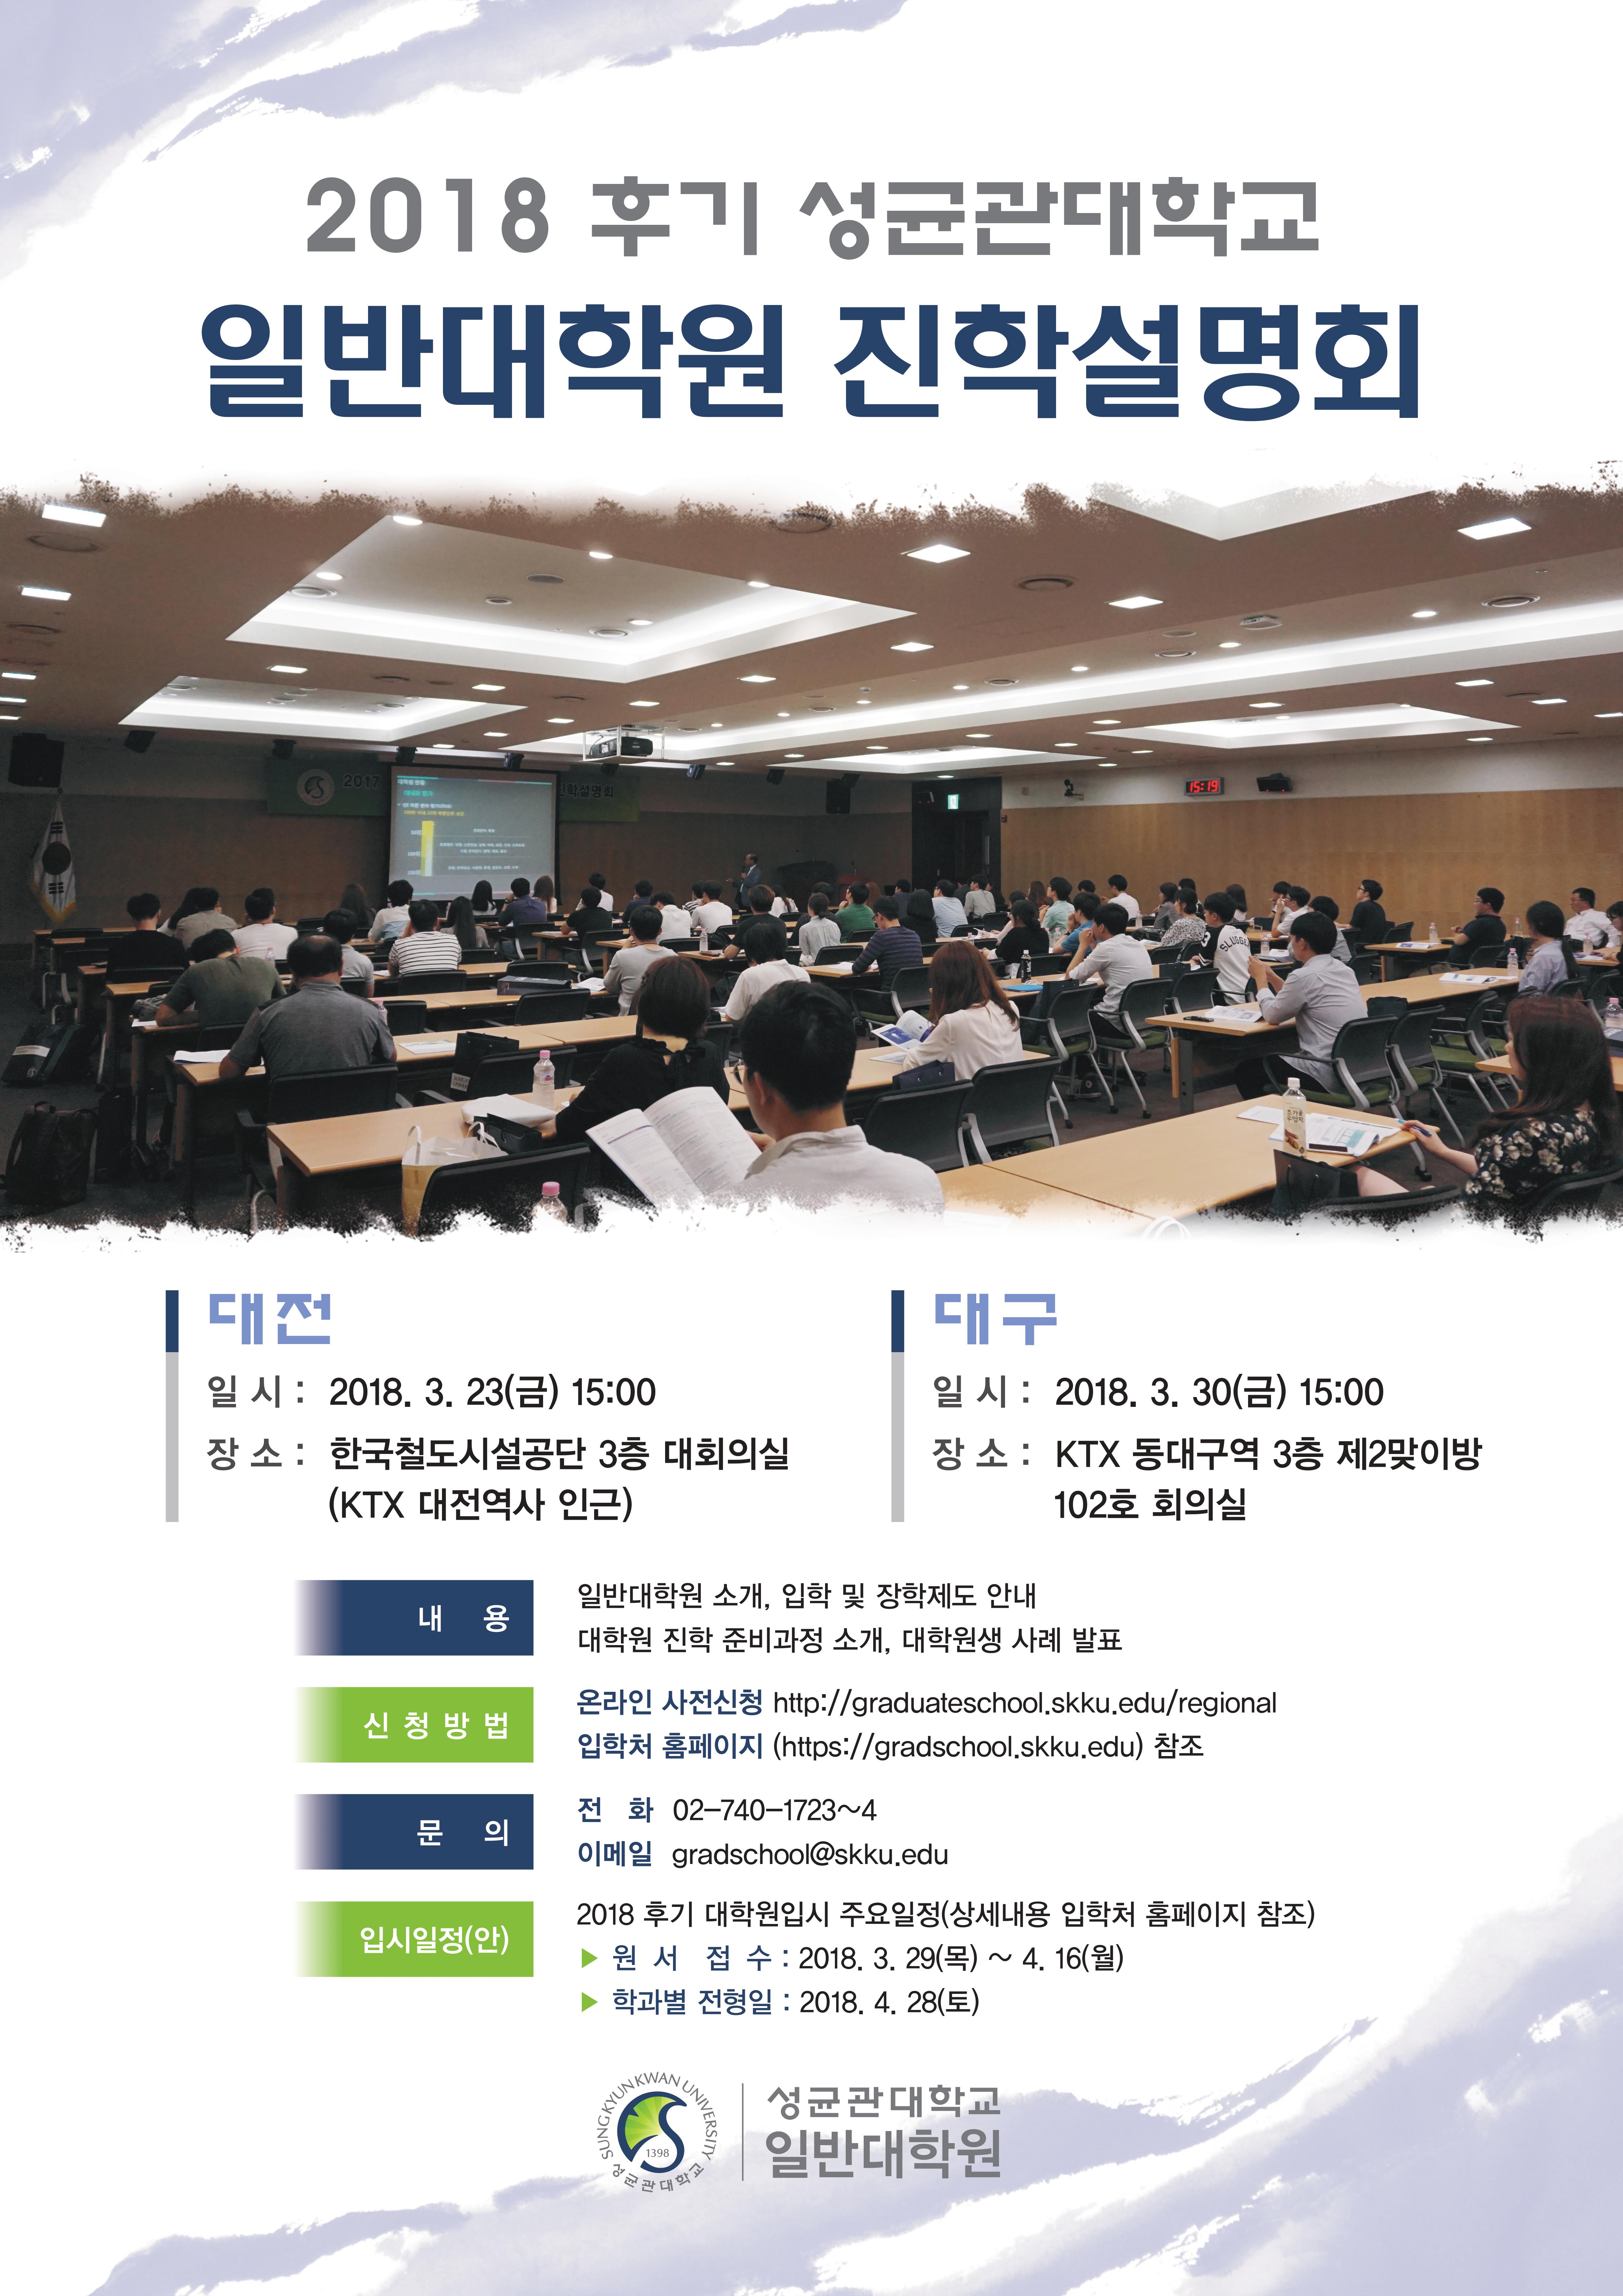 2018-후기 대학원 진학설명회 개최(대전/대구)